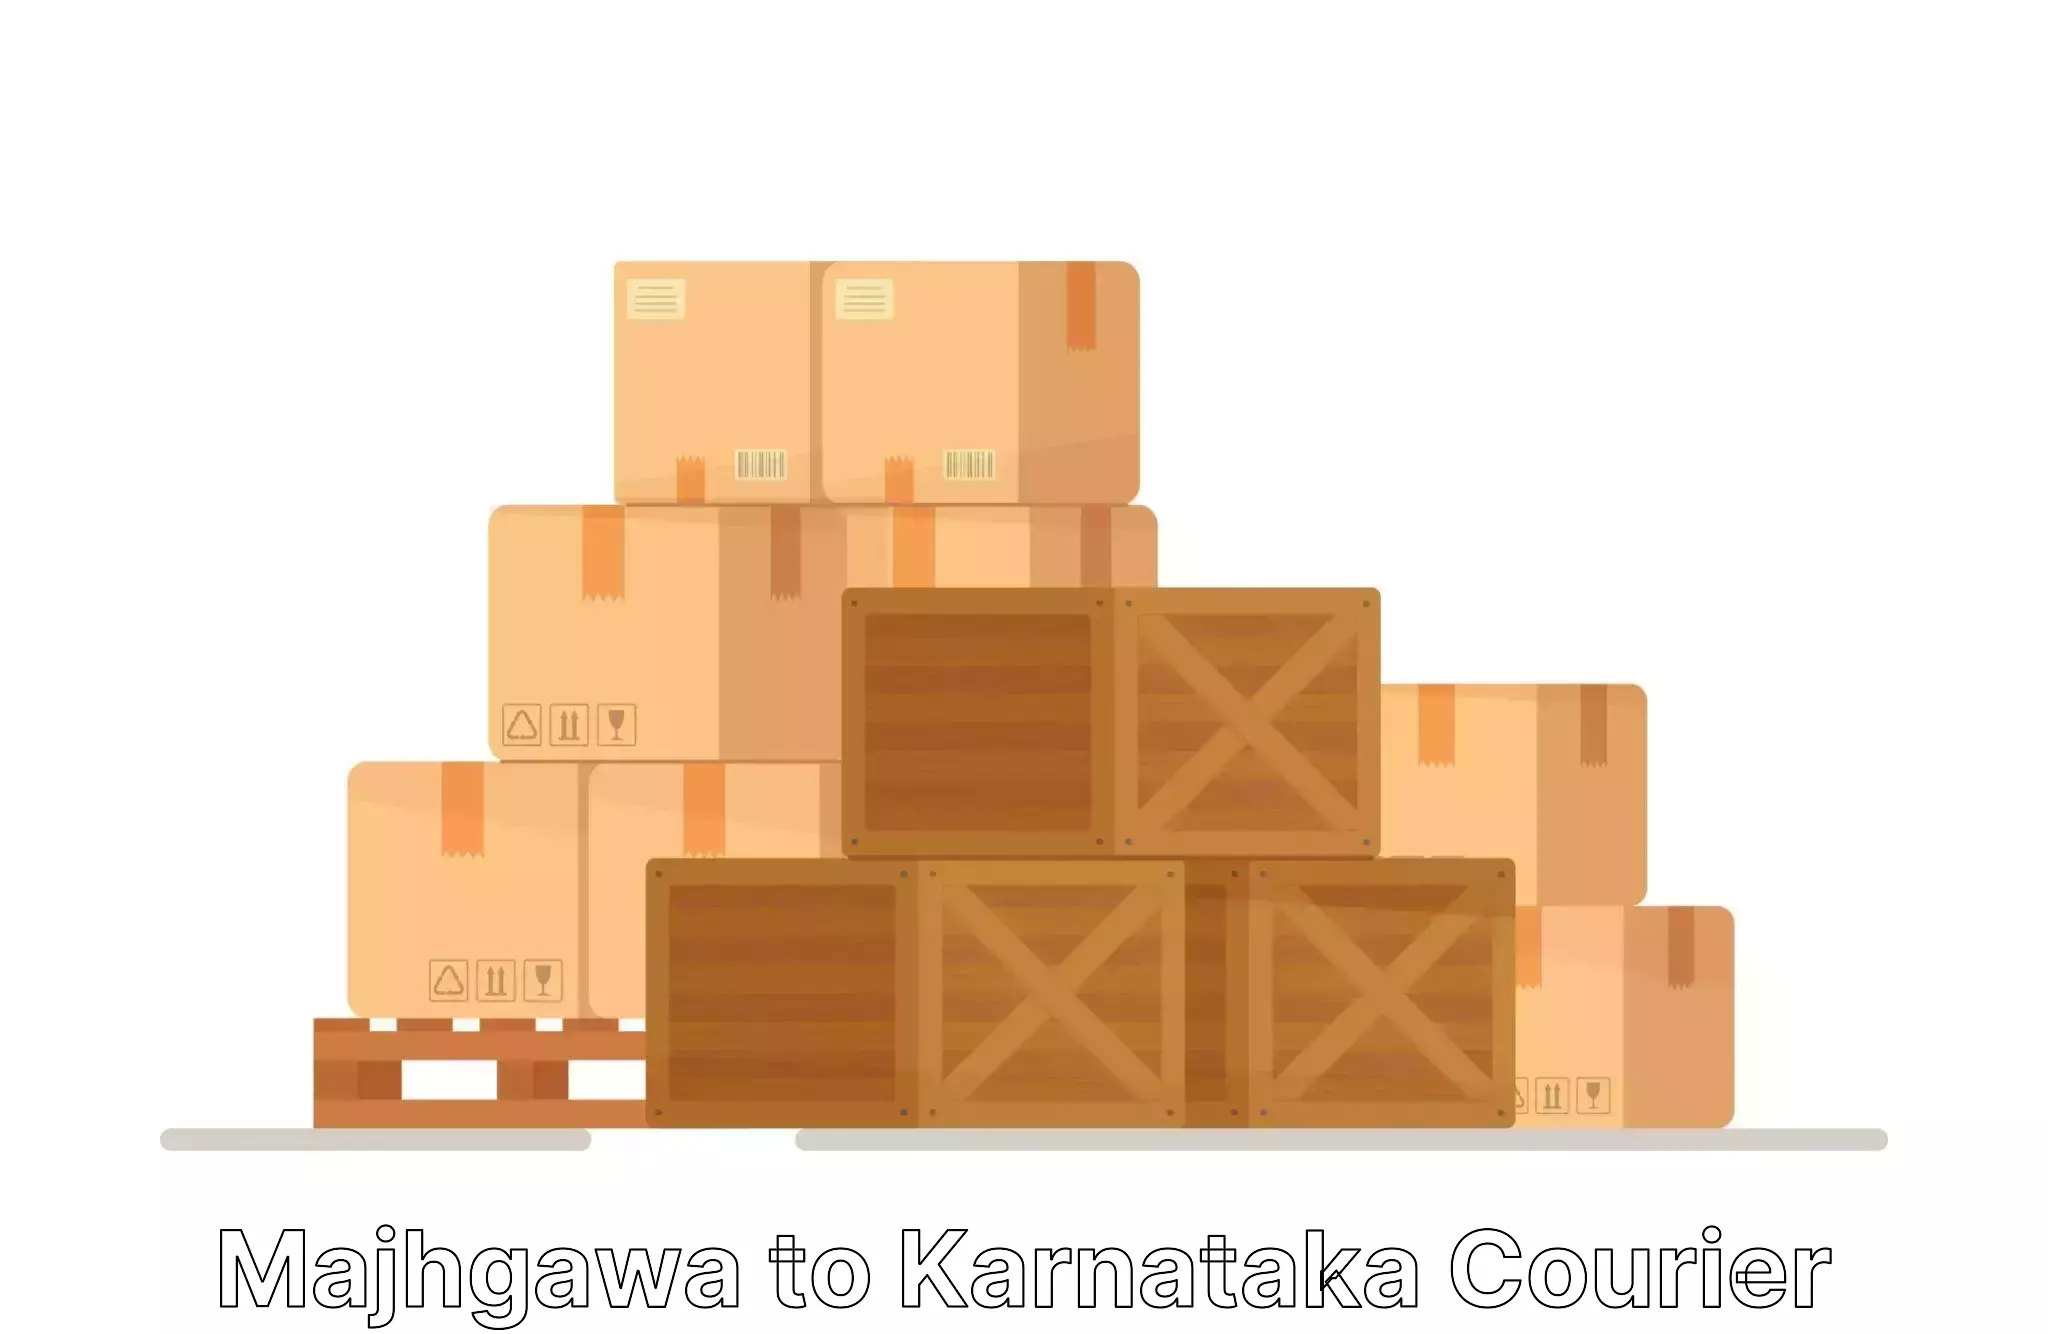 Cost-effective moving solutions Majhgawa to Channarayapatna